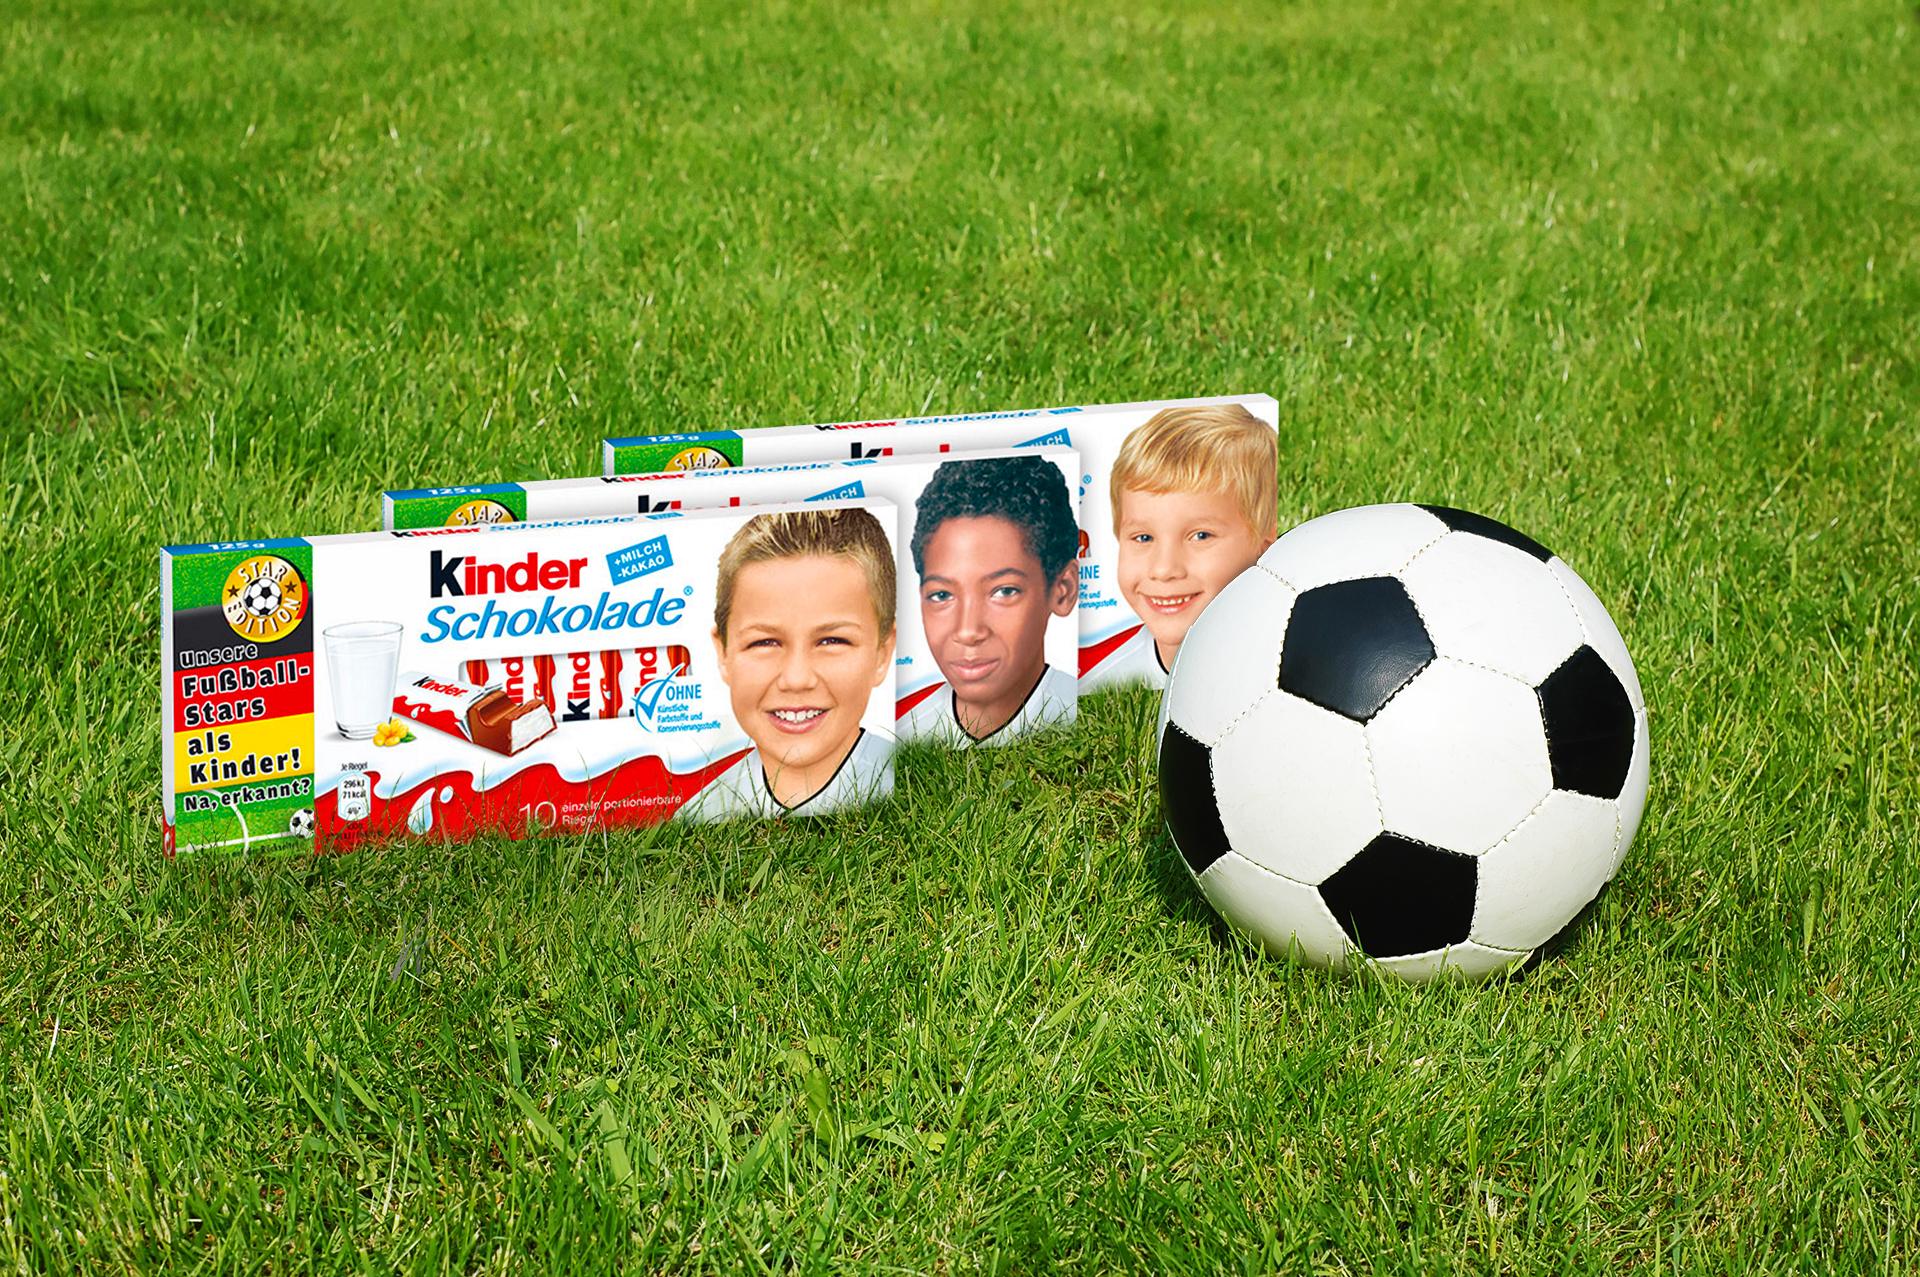 Rassistischer Facebook Post Pegida Wettert Gegen Kinderschokolade Fotos Mit Nationalspielern Bayern 3